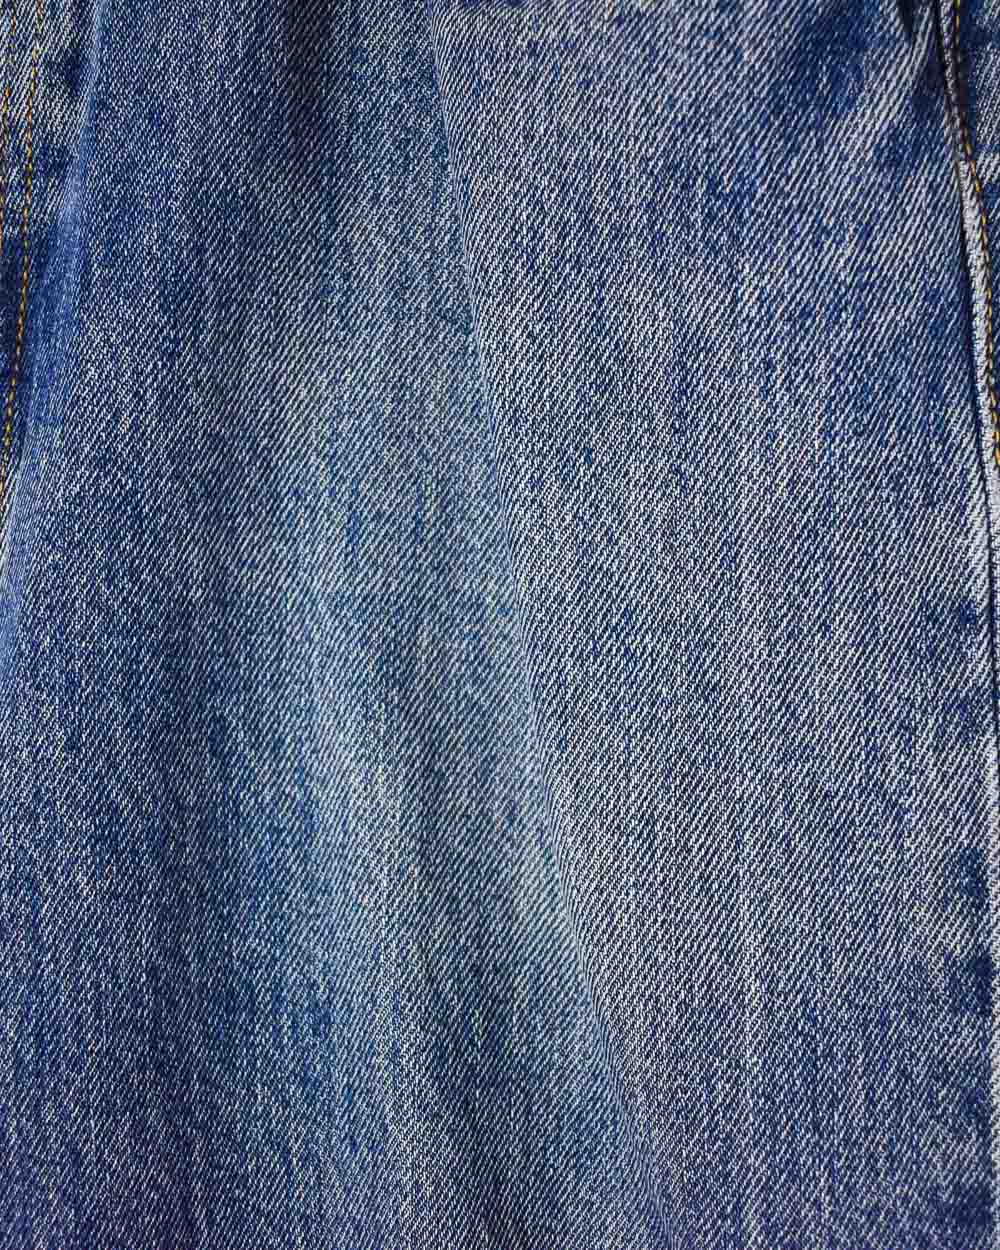 Blue Levi's 501 Jeans - W34 L30